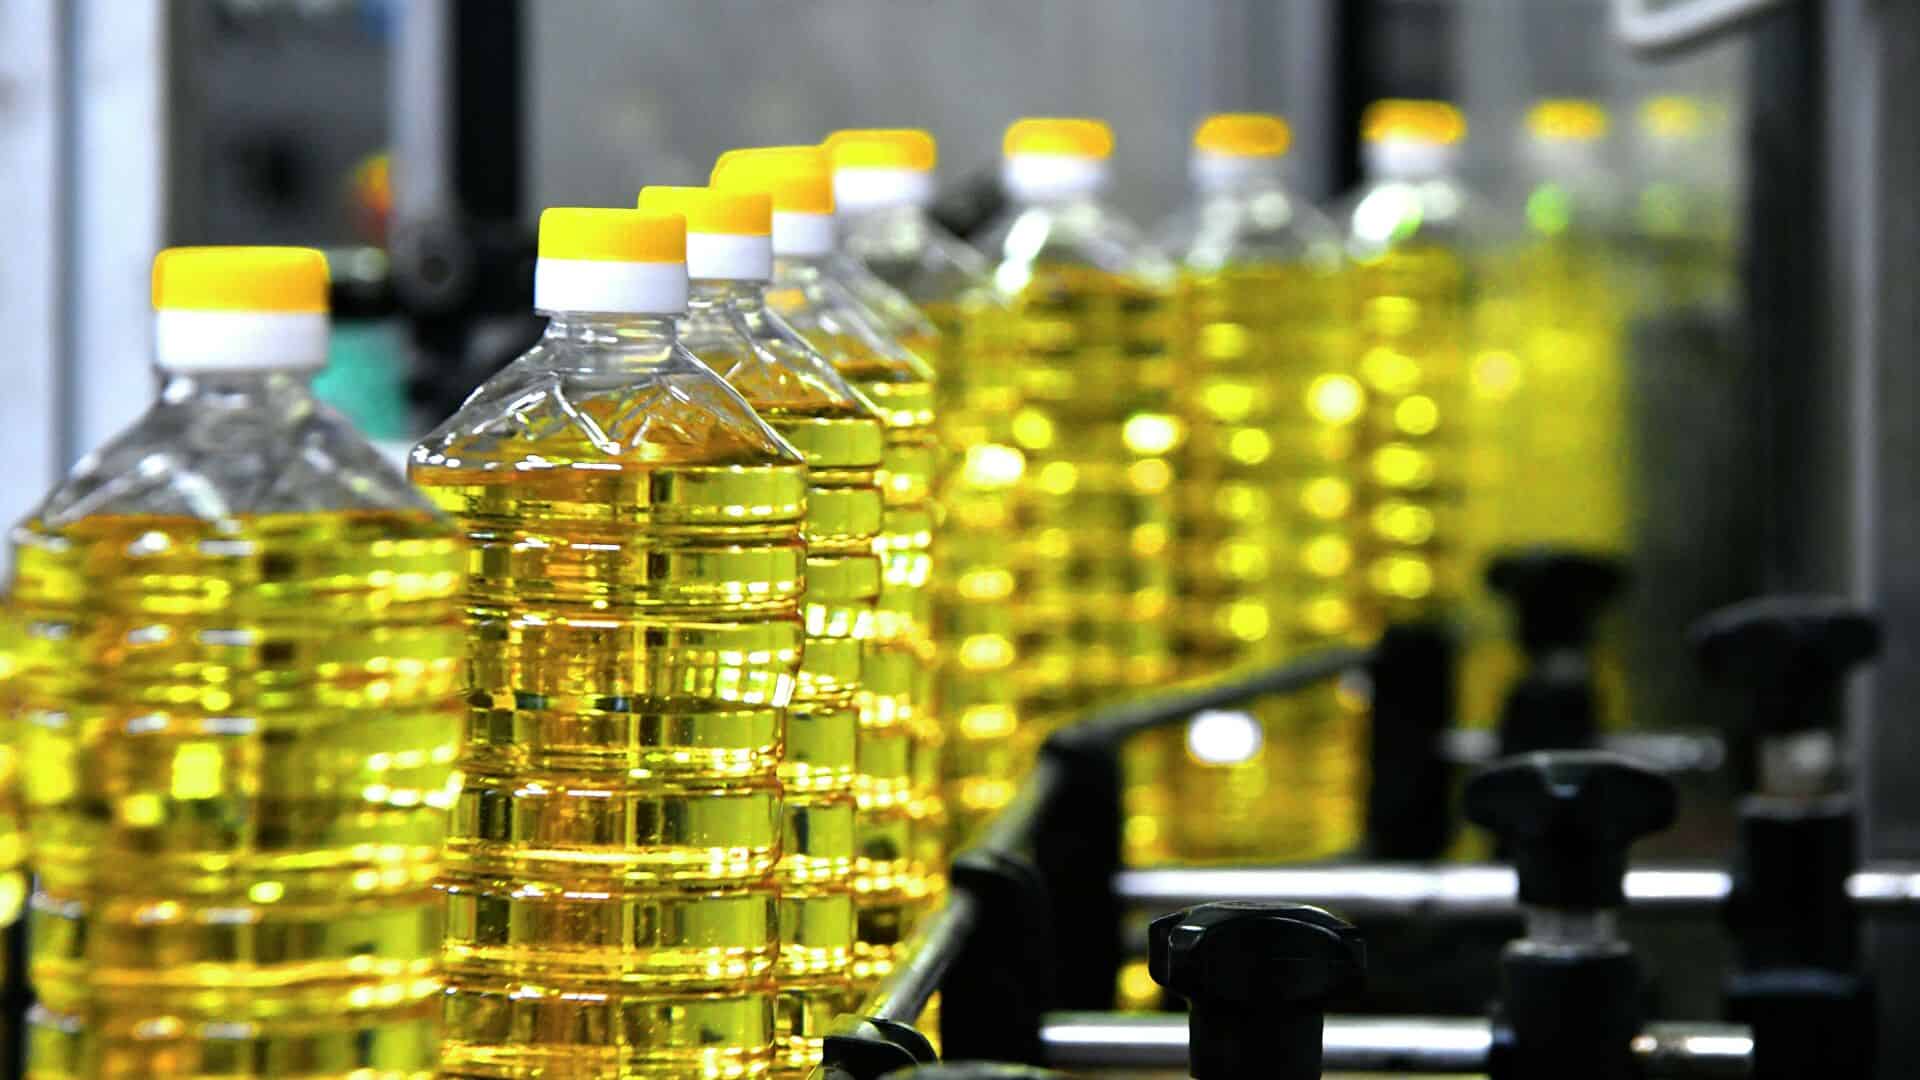 Госматрезервы реализует растительное масло в объеме 900 тысяч литров